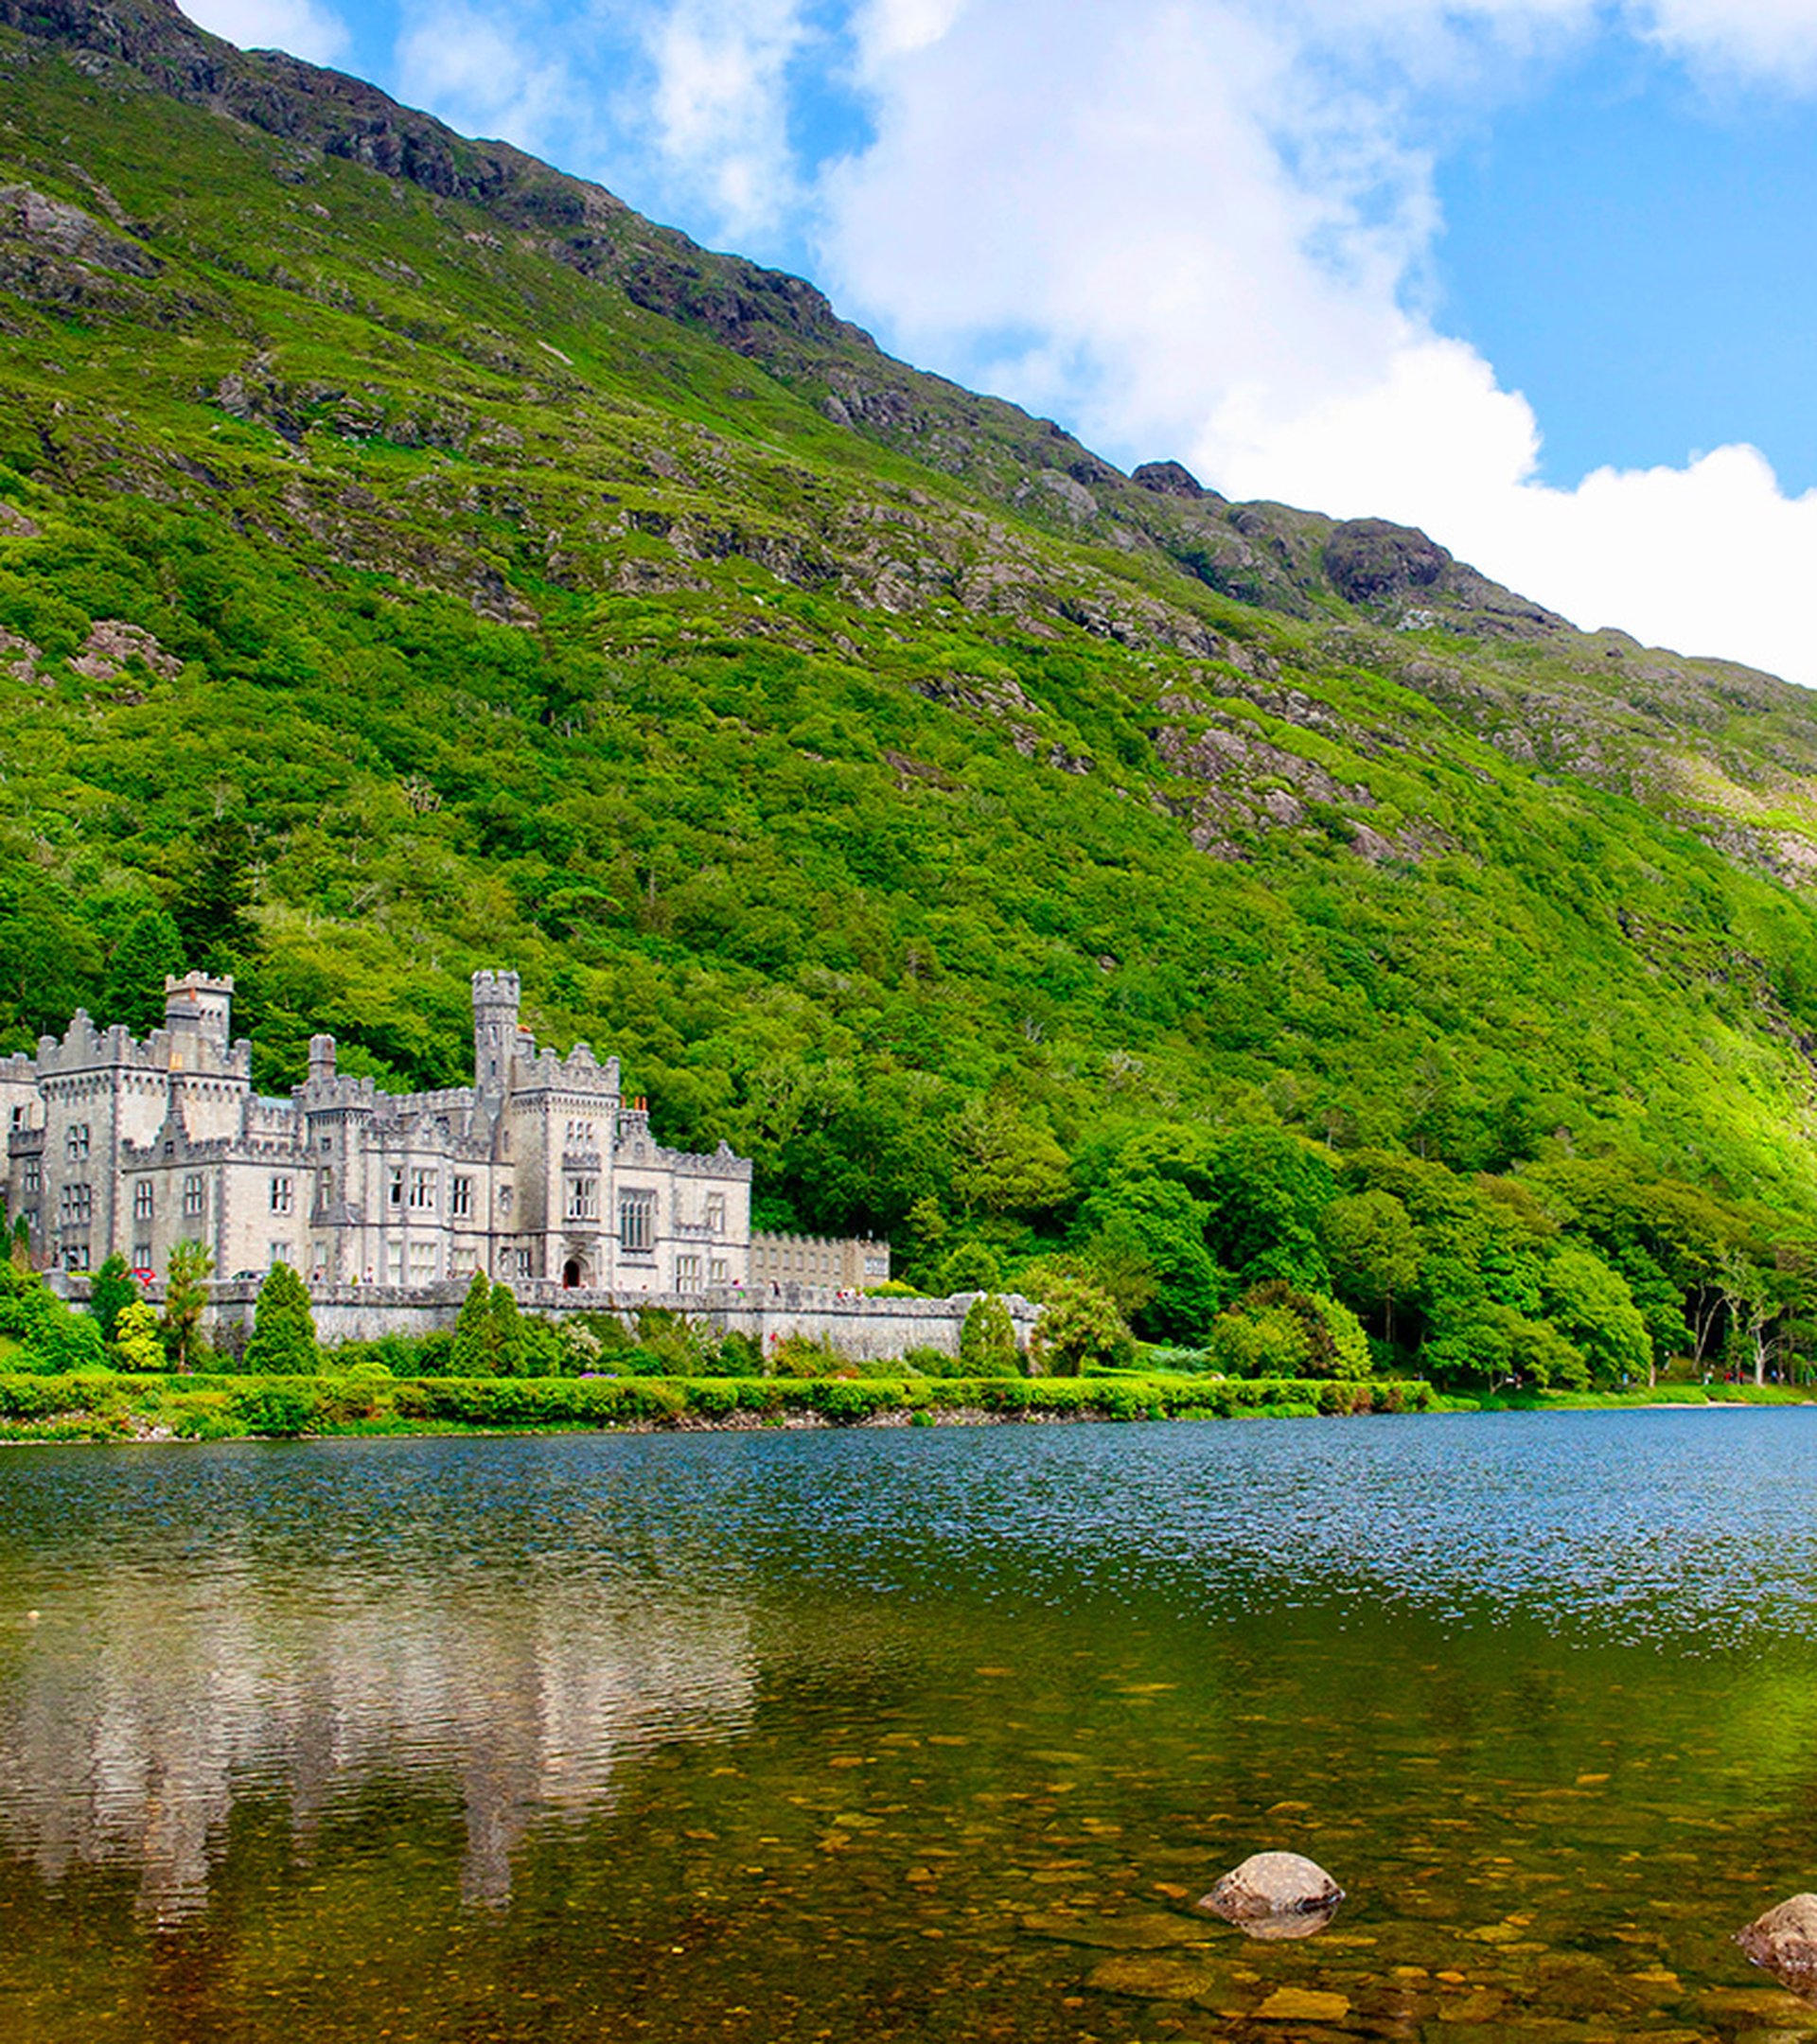 Notre sélection des plus beaux lieux à voir en Irlande